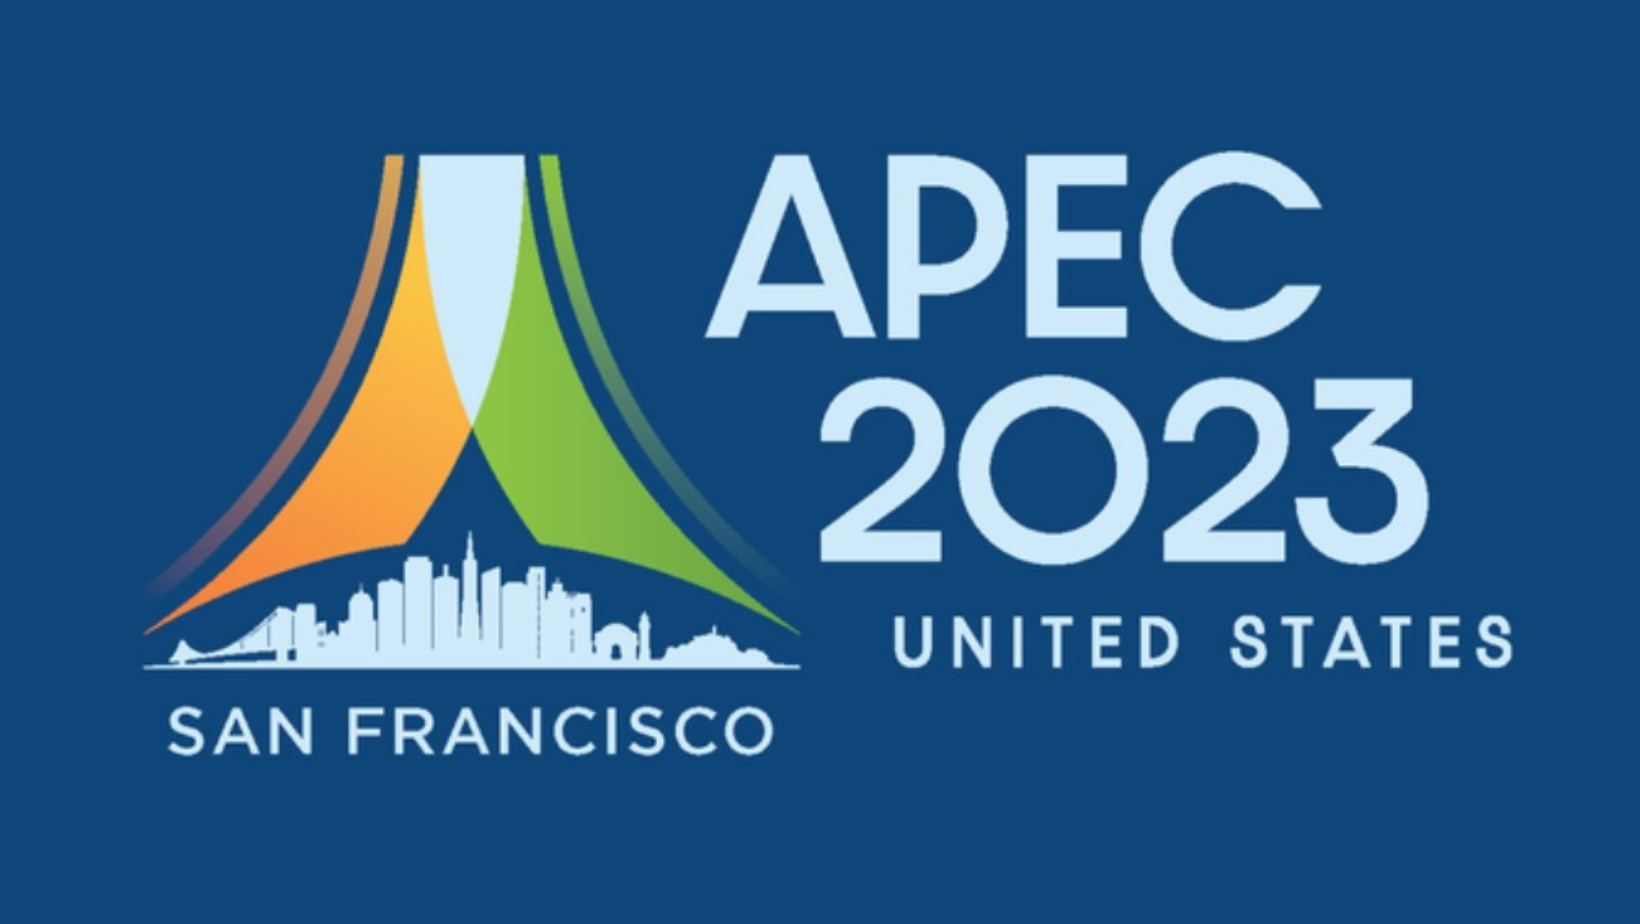 旧金山迎接亚太经合组织(APEC)会议，道路封闭和交通调整已宣布